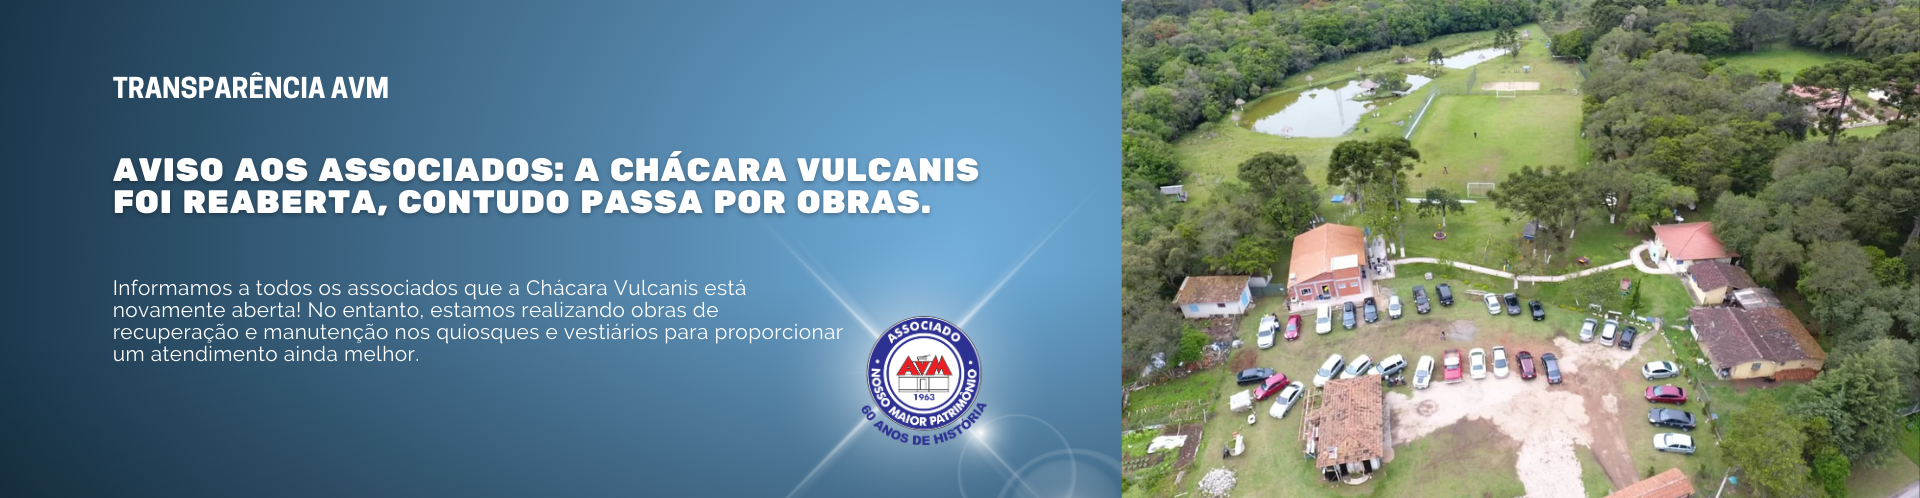 Aviso aos associados: A Chácara Vulcanis foi reaberta, contudo passa por obras.